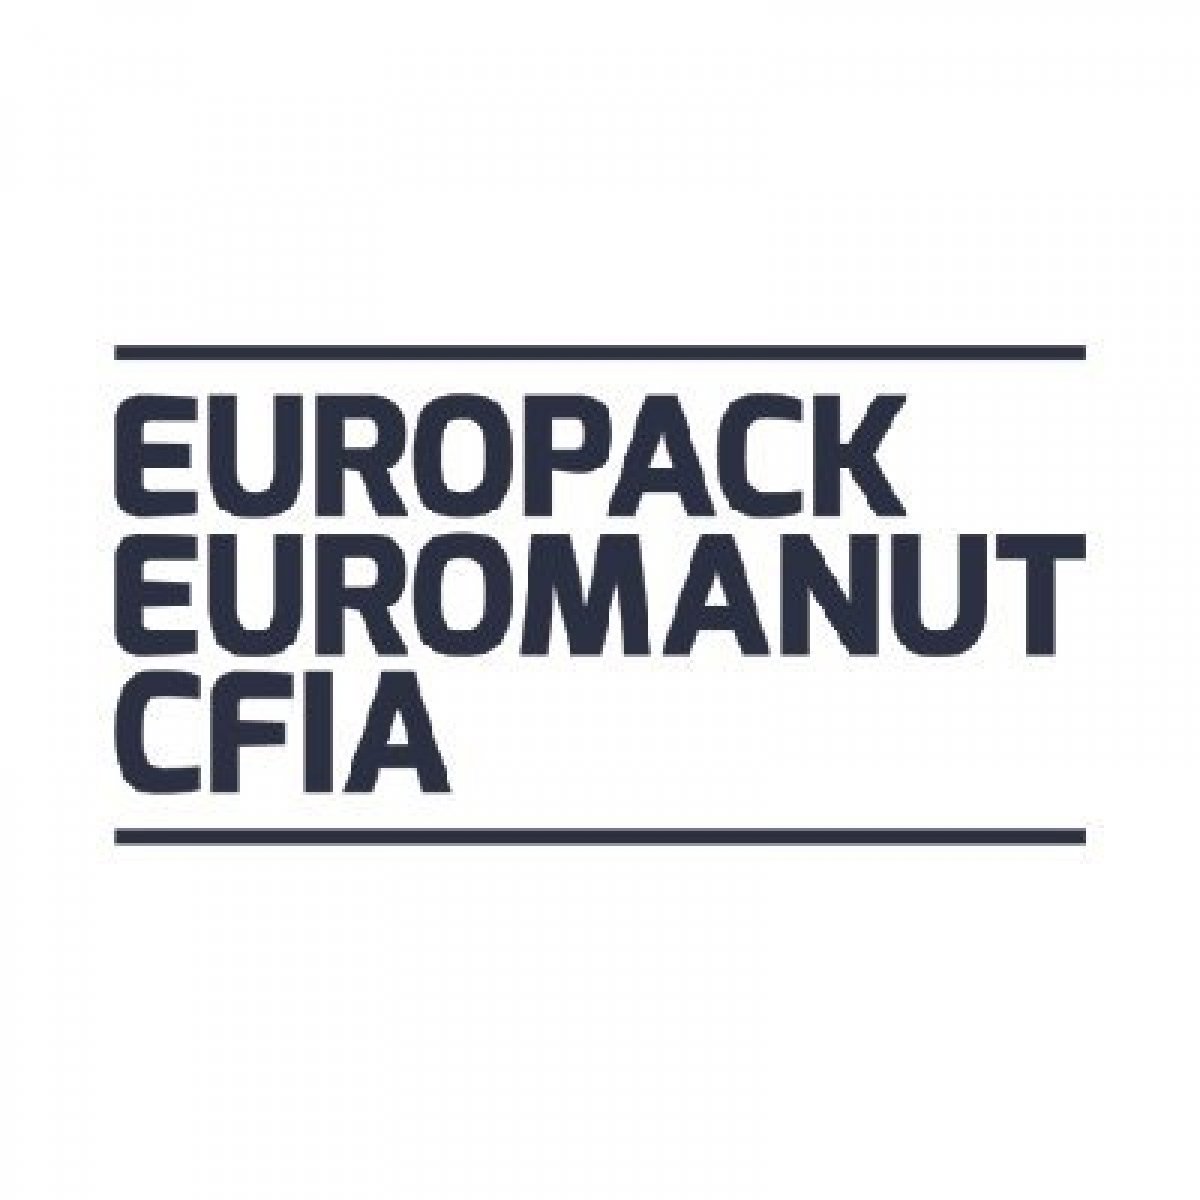 Europack Euromanut CFIA - Die Ausstellung von Handhabung, Verpackung und Proze